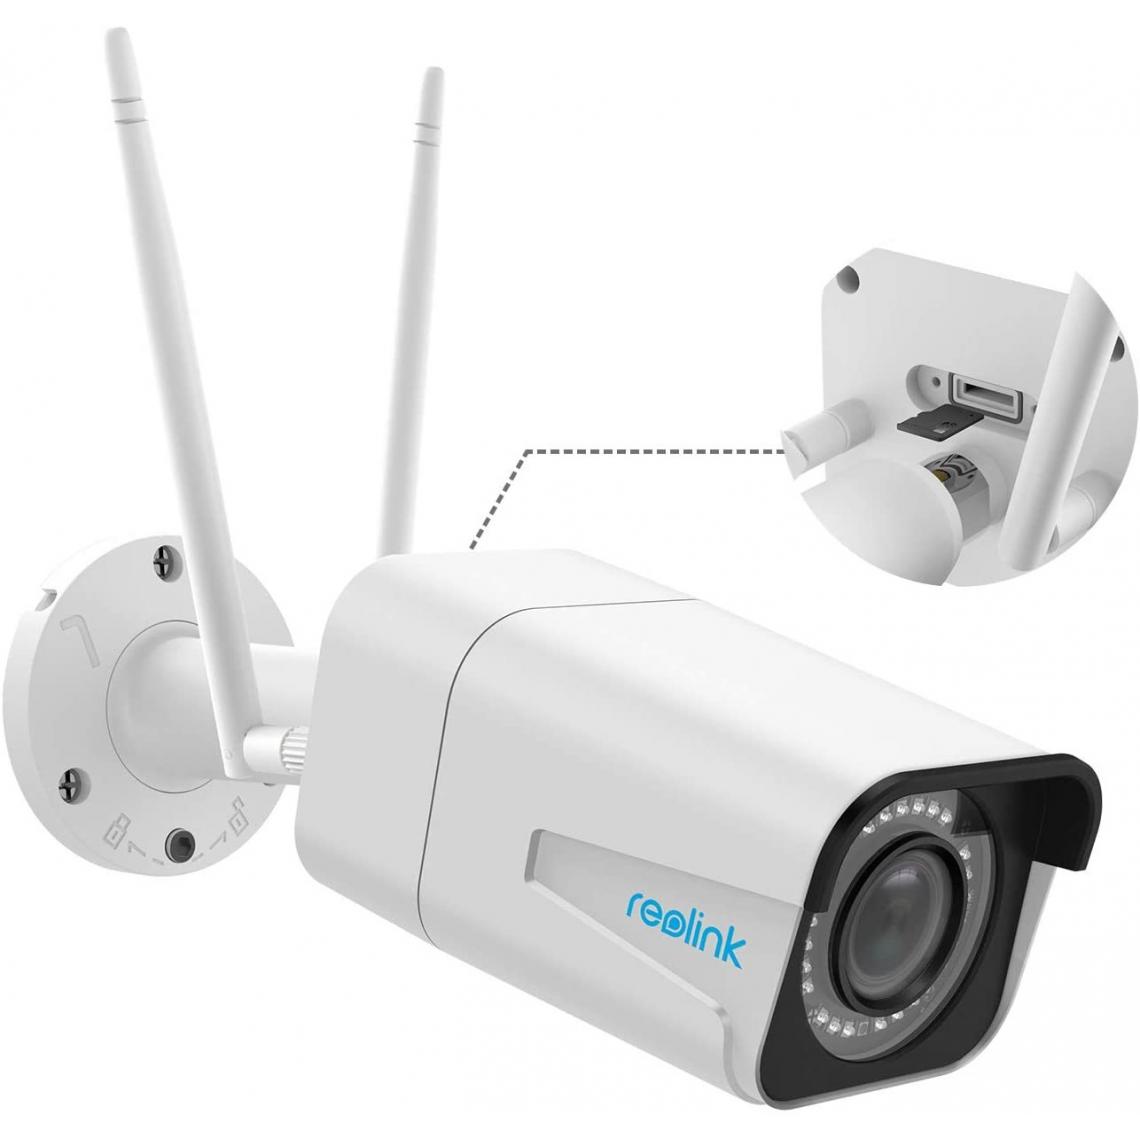 Reolink - 5MP Caméra Surveillance Extérieure WiFi - RLC-511WA - Caméra IP avec Zoom Optique 5X Détection de Personnes/Véhicule Vision Nocturne Couleur - Caméra de surveillance connectée